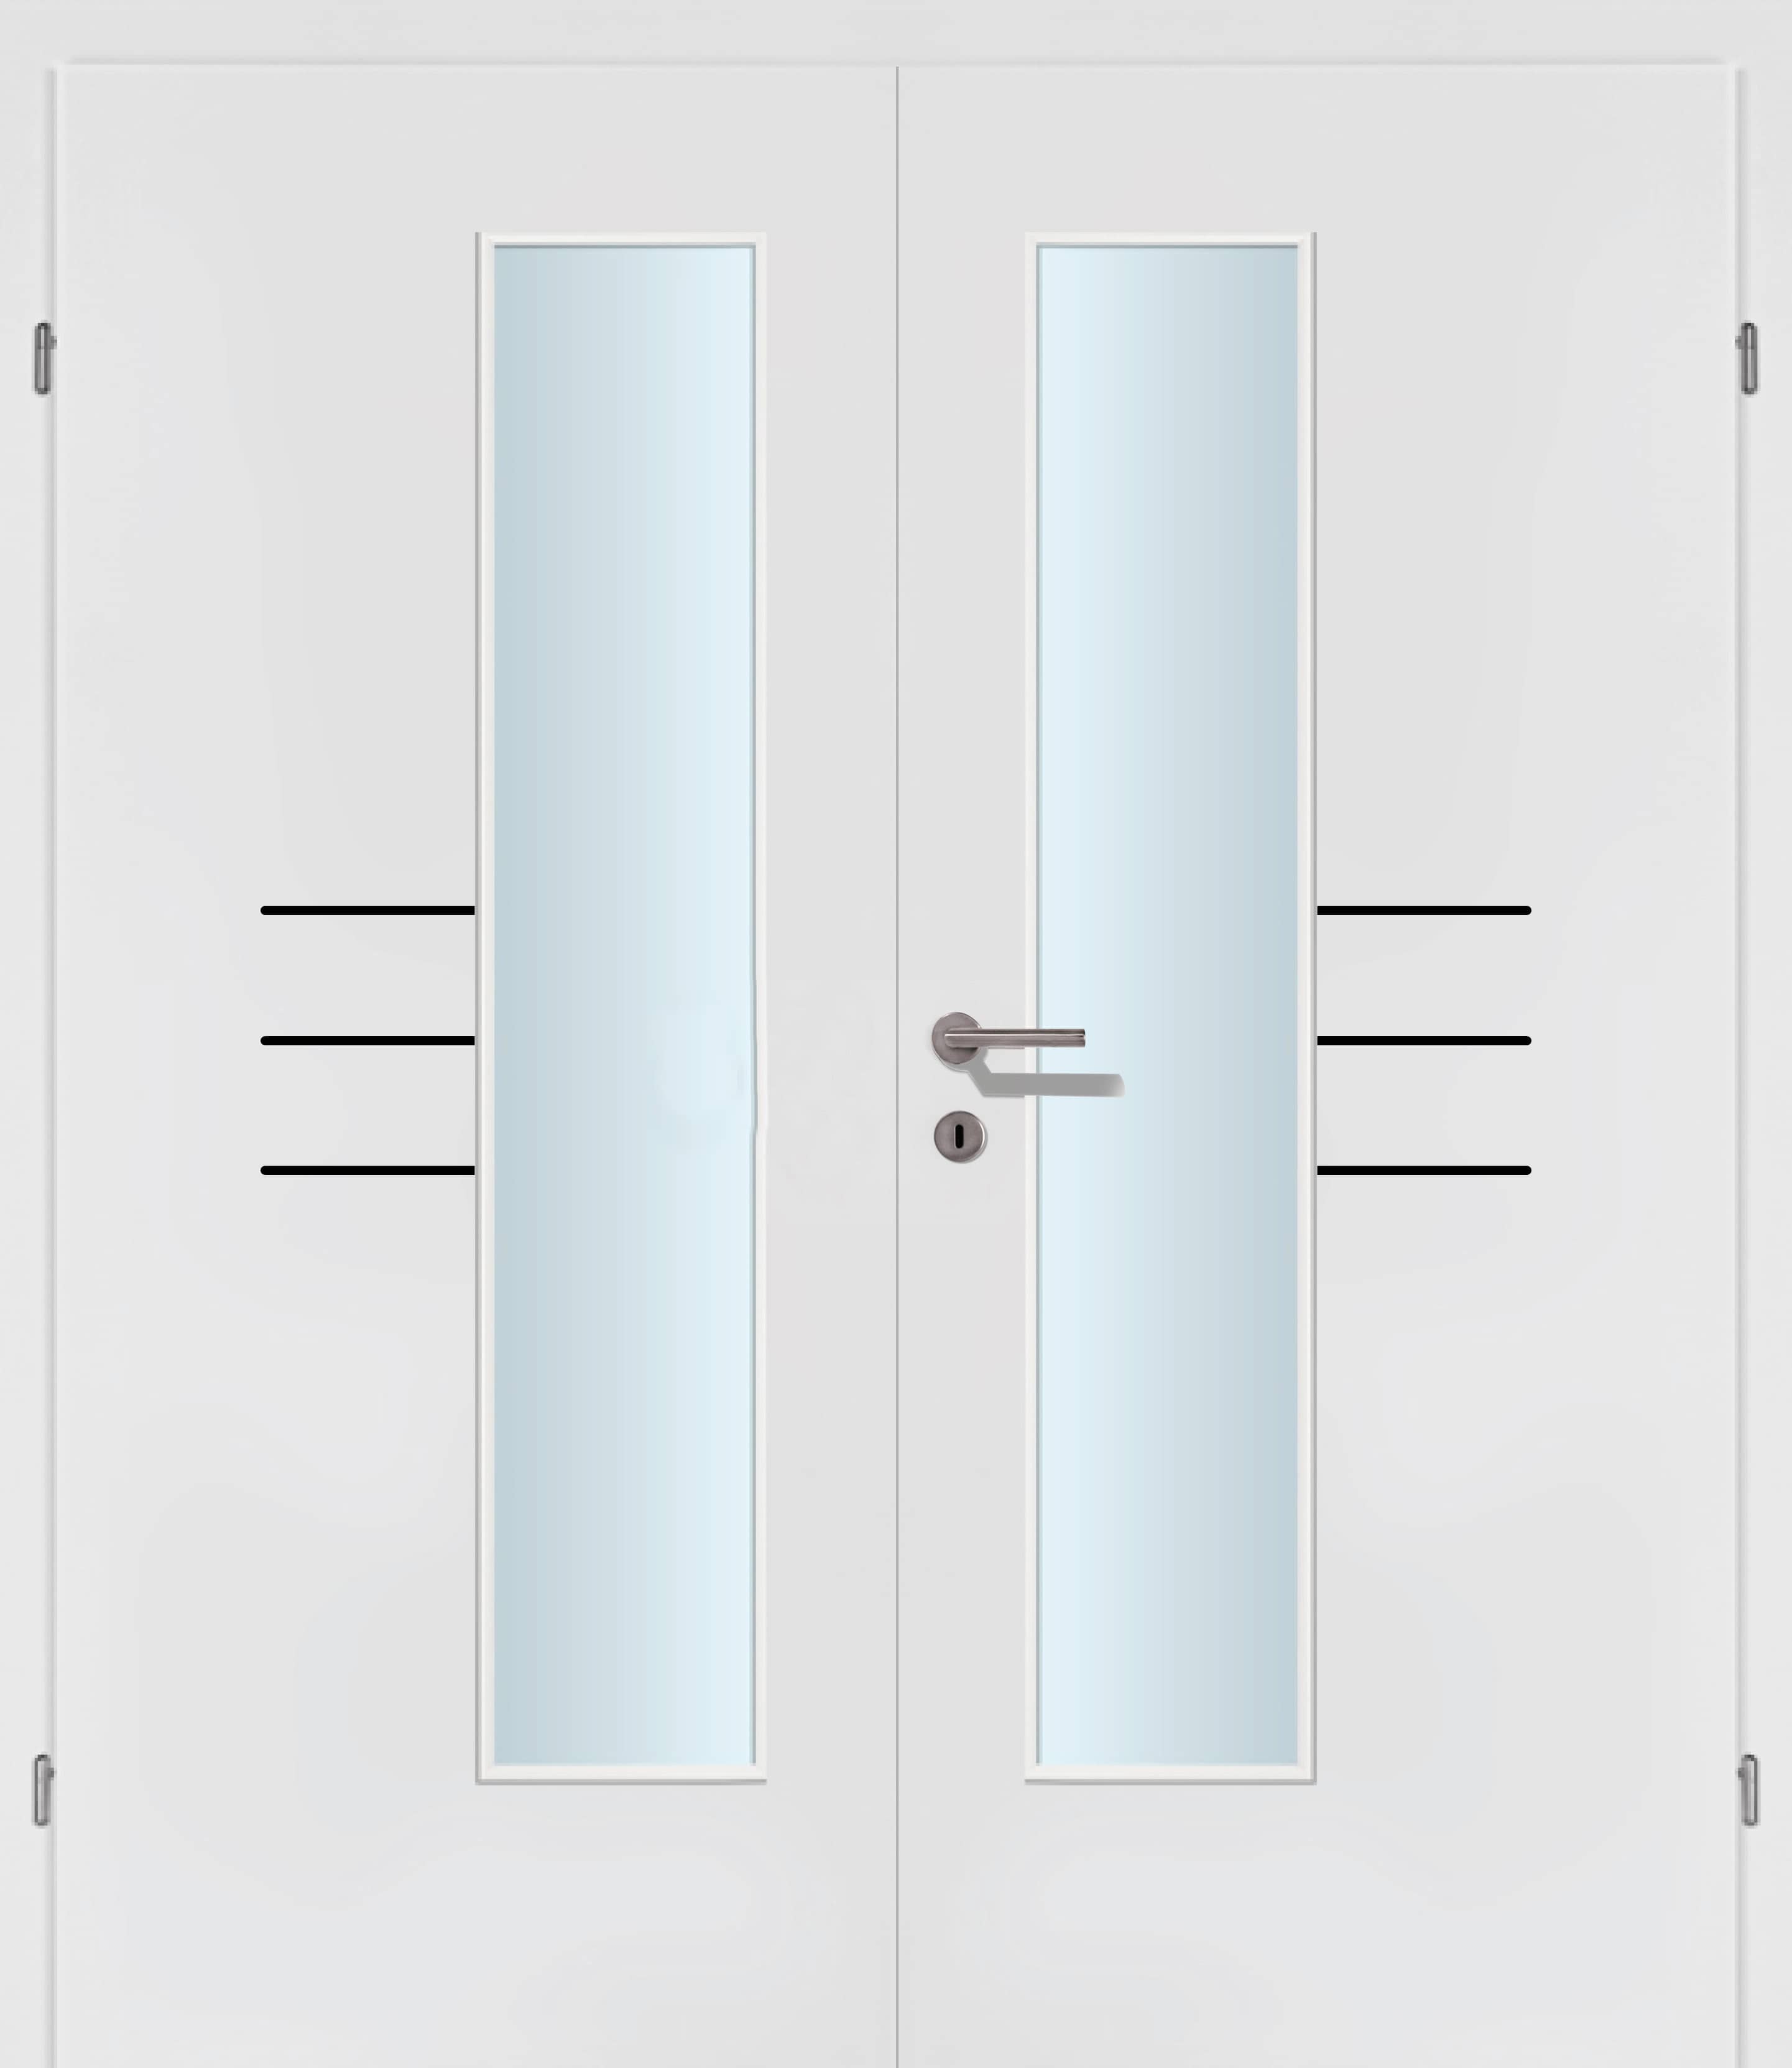 Selektion T50 Black Lisenen weiss Innentür Inkl. Zarge (Türrahmen) Doppeltüre Inkl. Glaslichte EN Drückerseitig